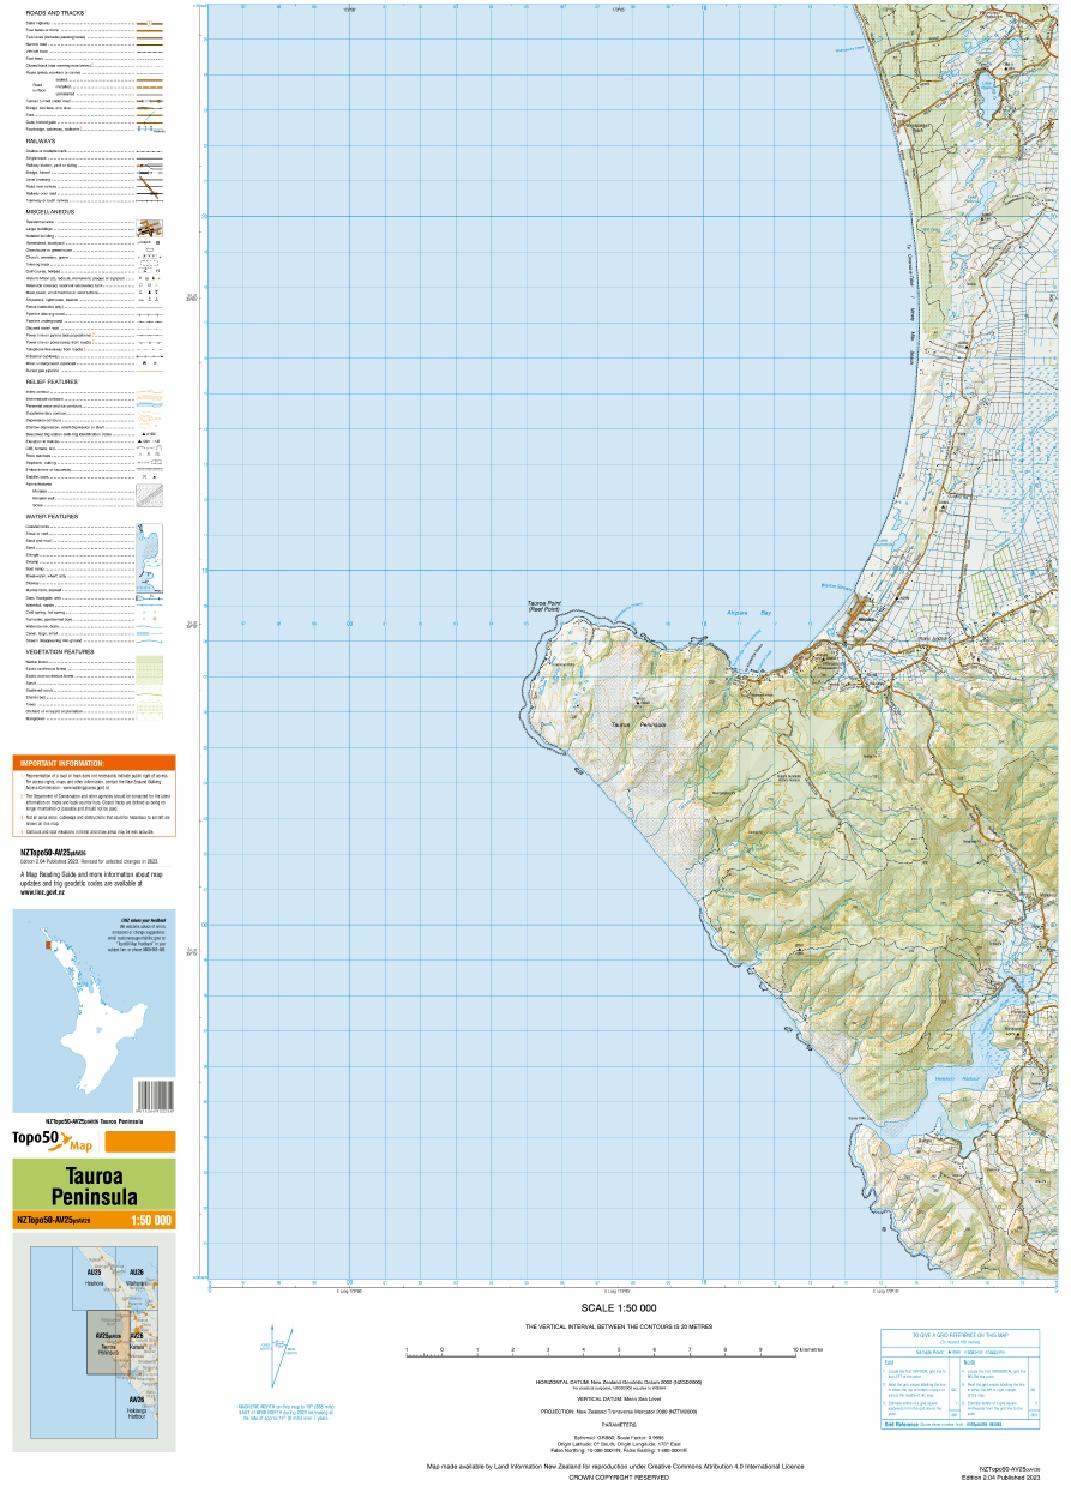 Topo map of Tauroa Peninsula